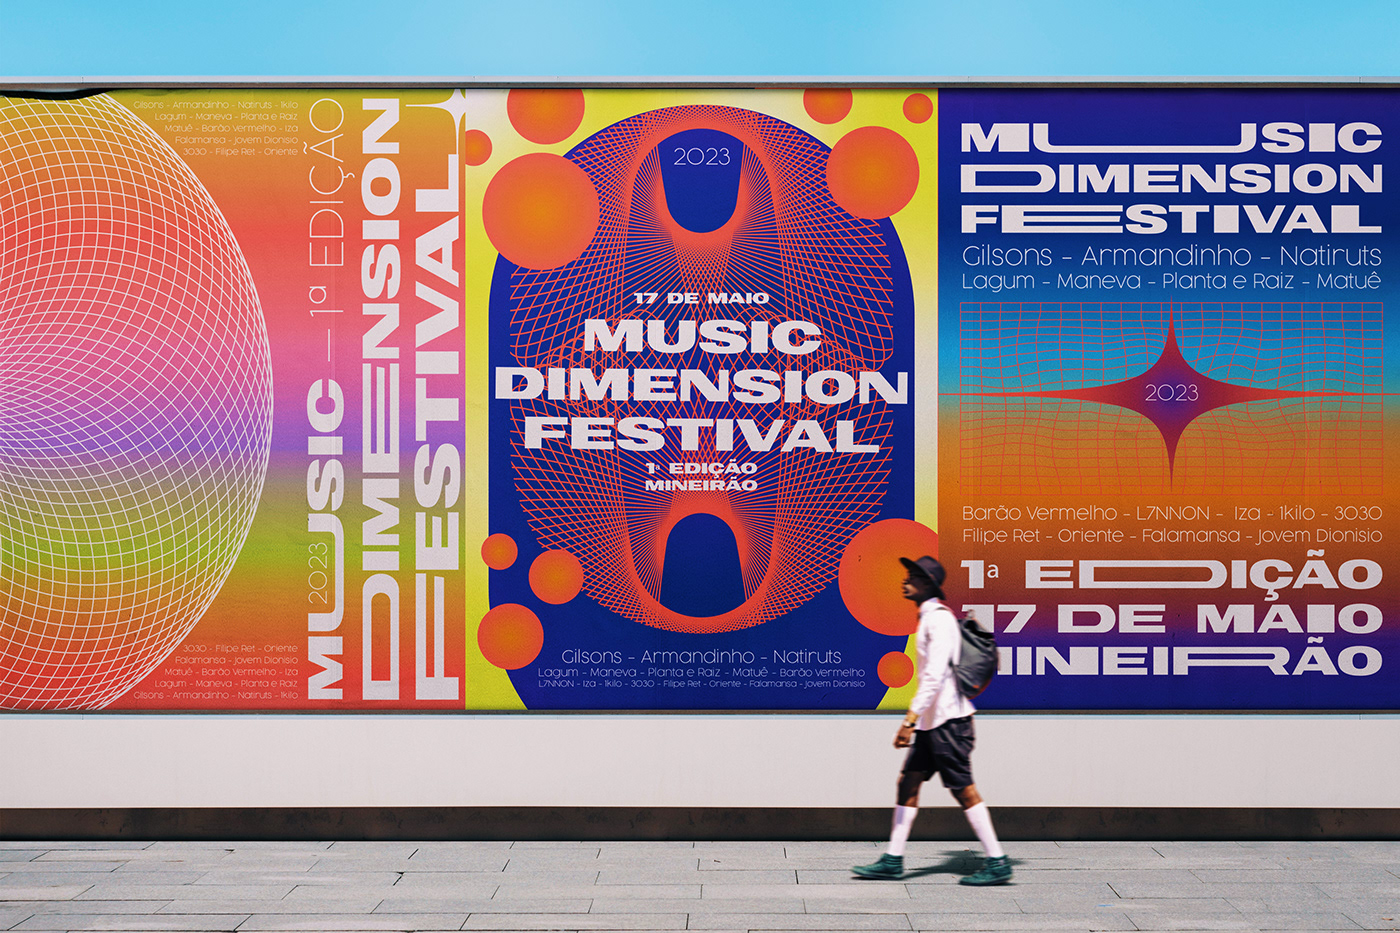 Poster Design poster festival posterdesign poster art music adobe illustrator festivalposter